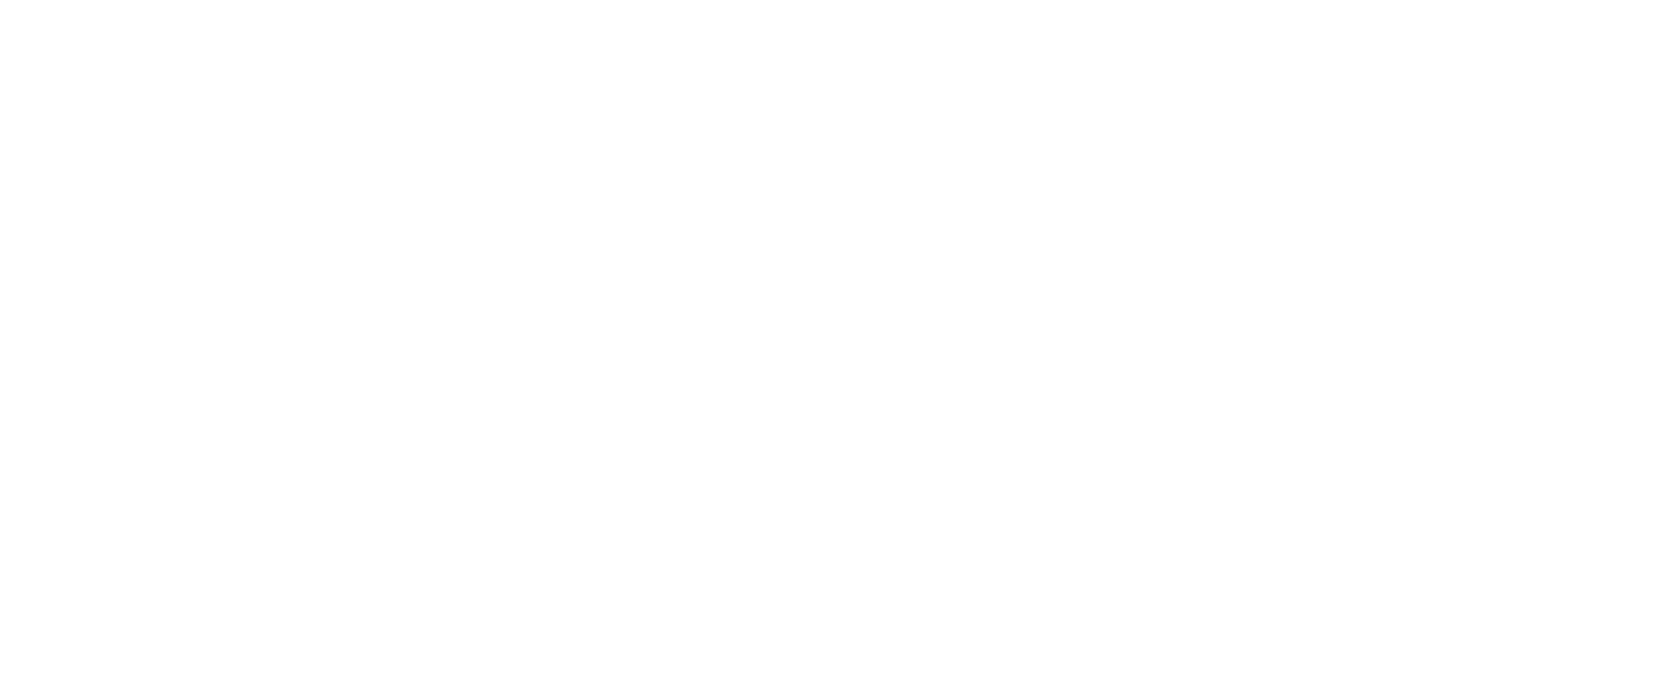 Москвоский лифтостроительный завод